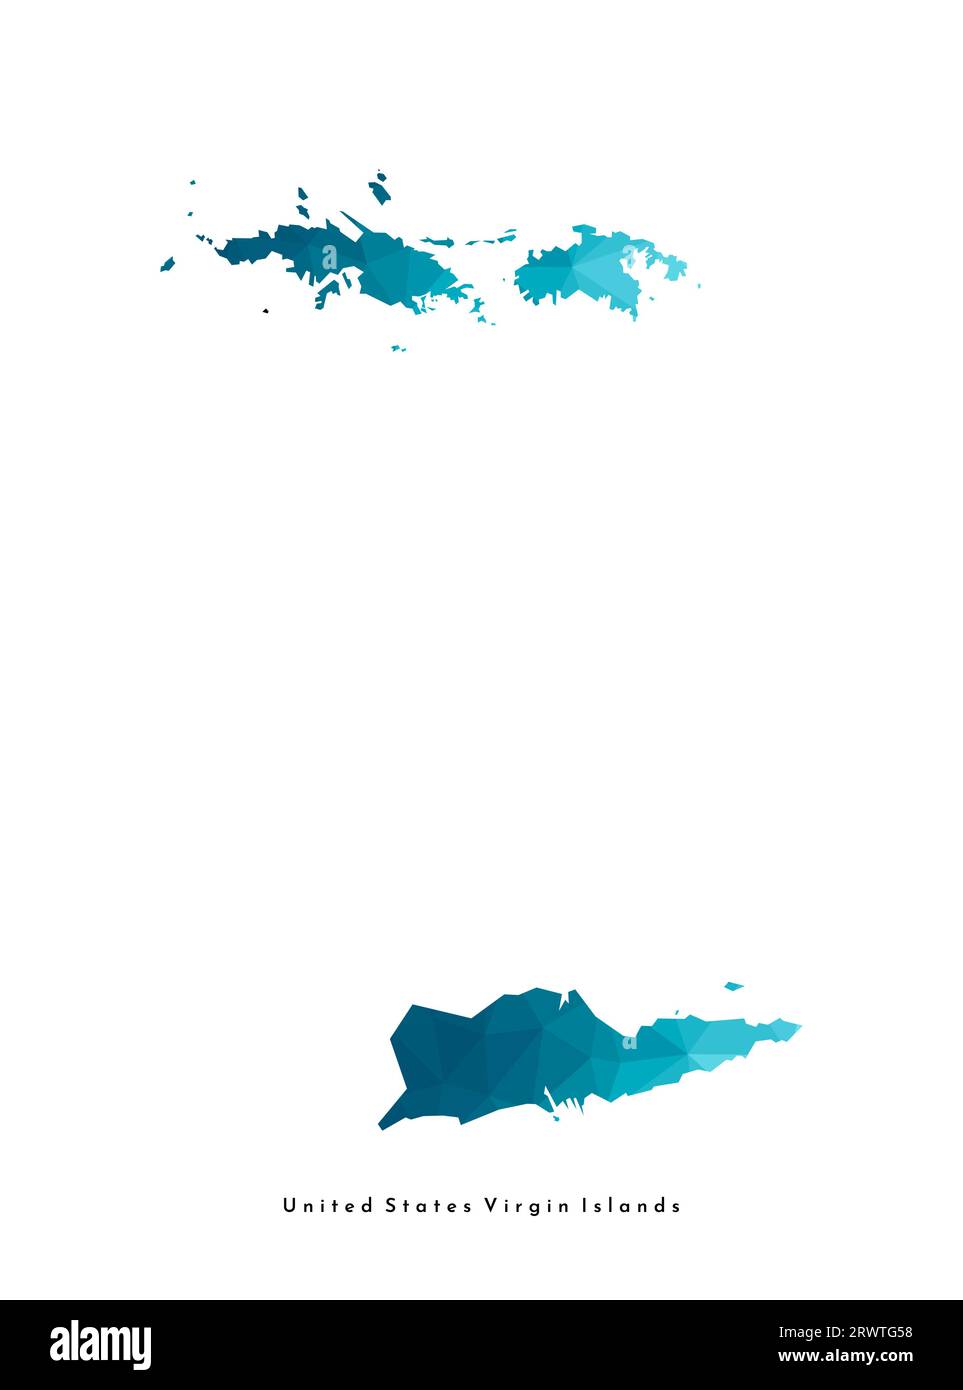 Vektor isolierte Illustration Symbol mit vereinfachter blauer Silhouette der United States Virgin Islands (american) Karte. Polygonaler geometrischer Stil, Triangula Stock Vektor